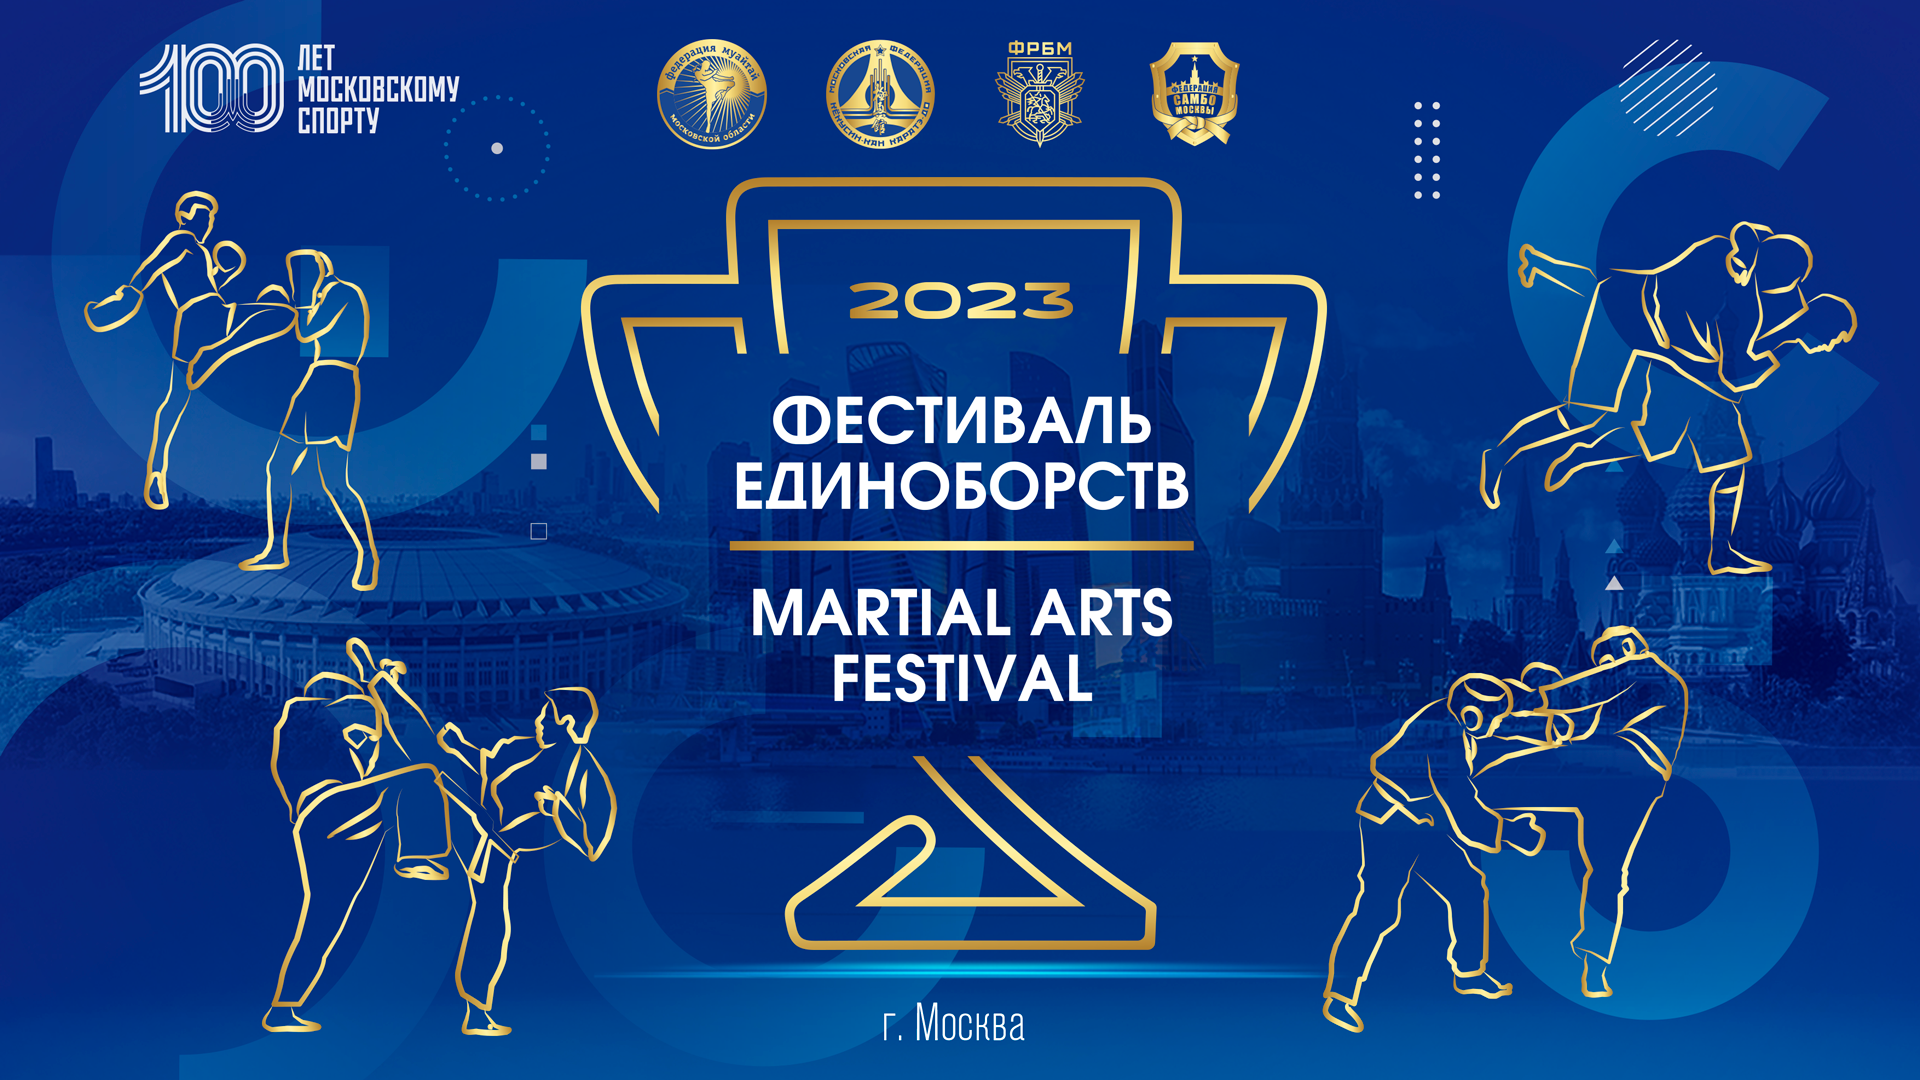 Фестиваль единоборств 2023 Москва